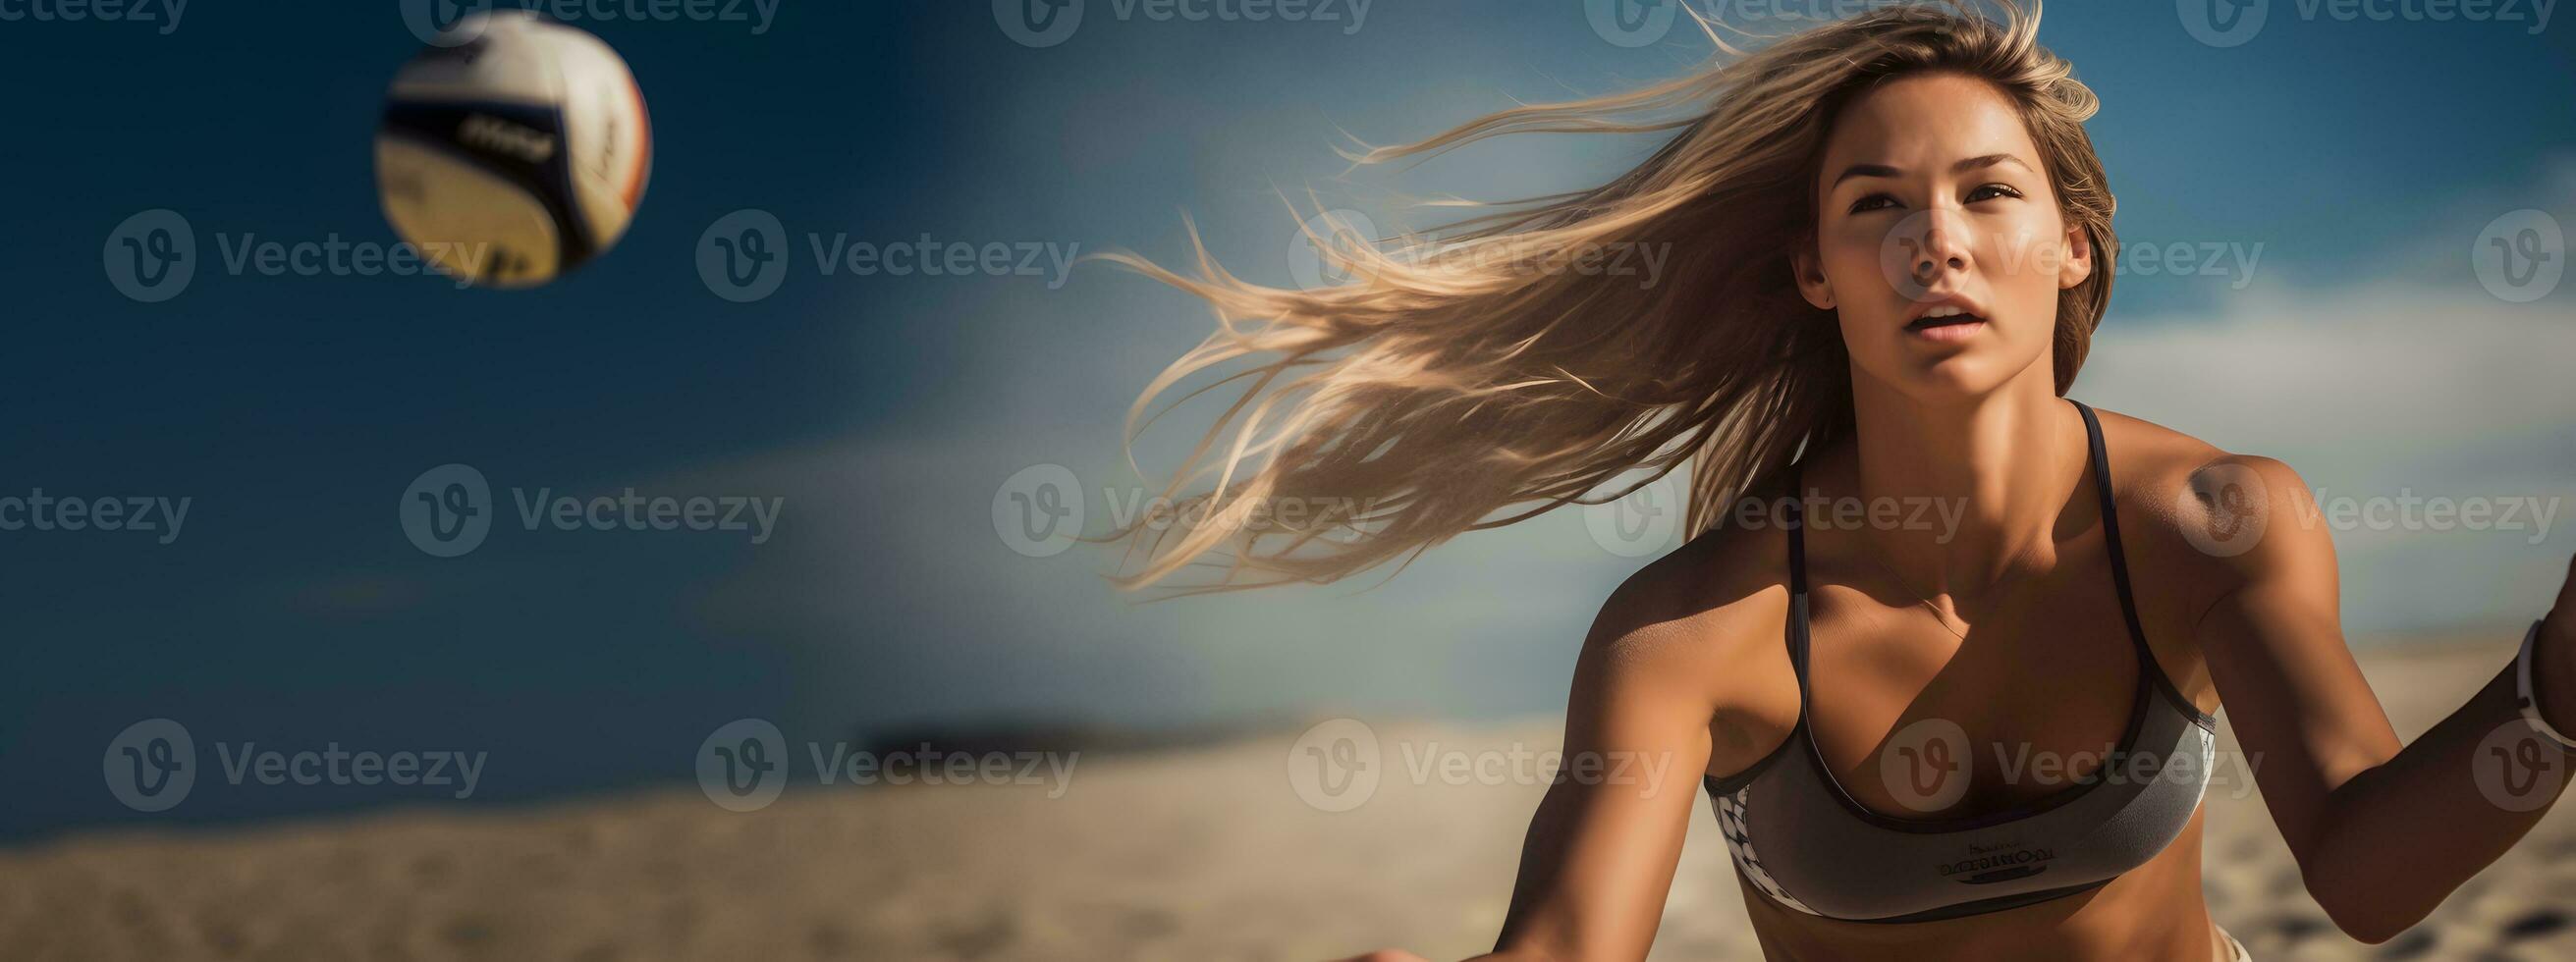 Foto av en kvinna spelar strand volleyboll i en bikini